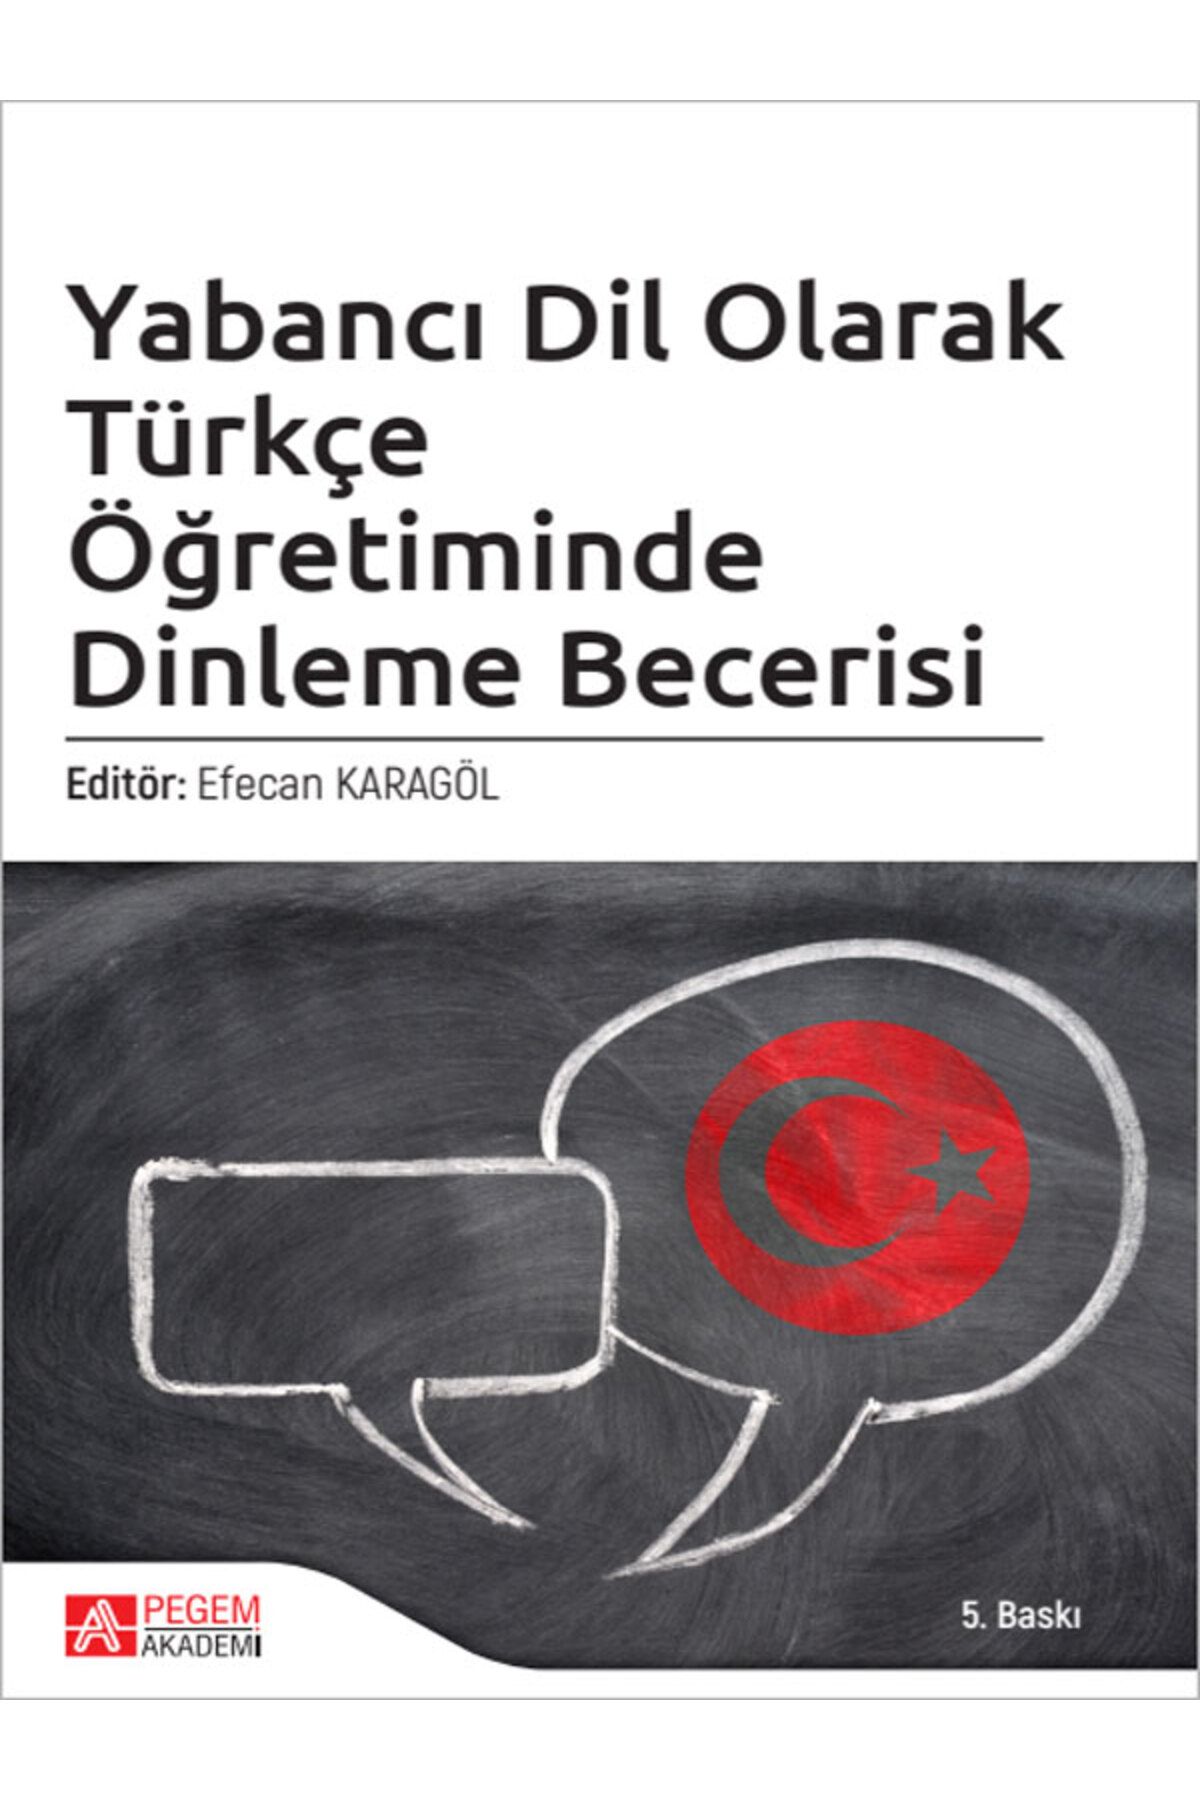 Pegem Akademi Yayıncılık Pegem Akademik Yabancı Dil Olarak Türkçe Öğretiminde Dinleme Becerisi